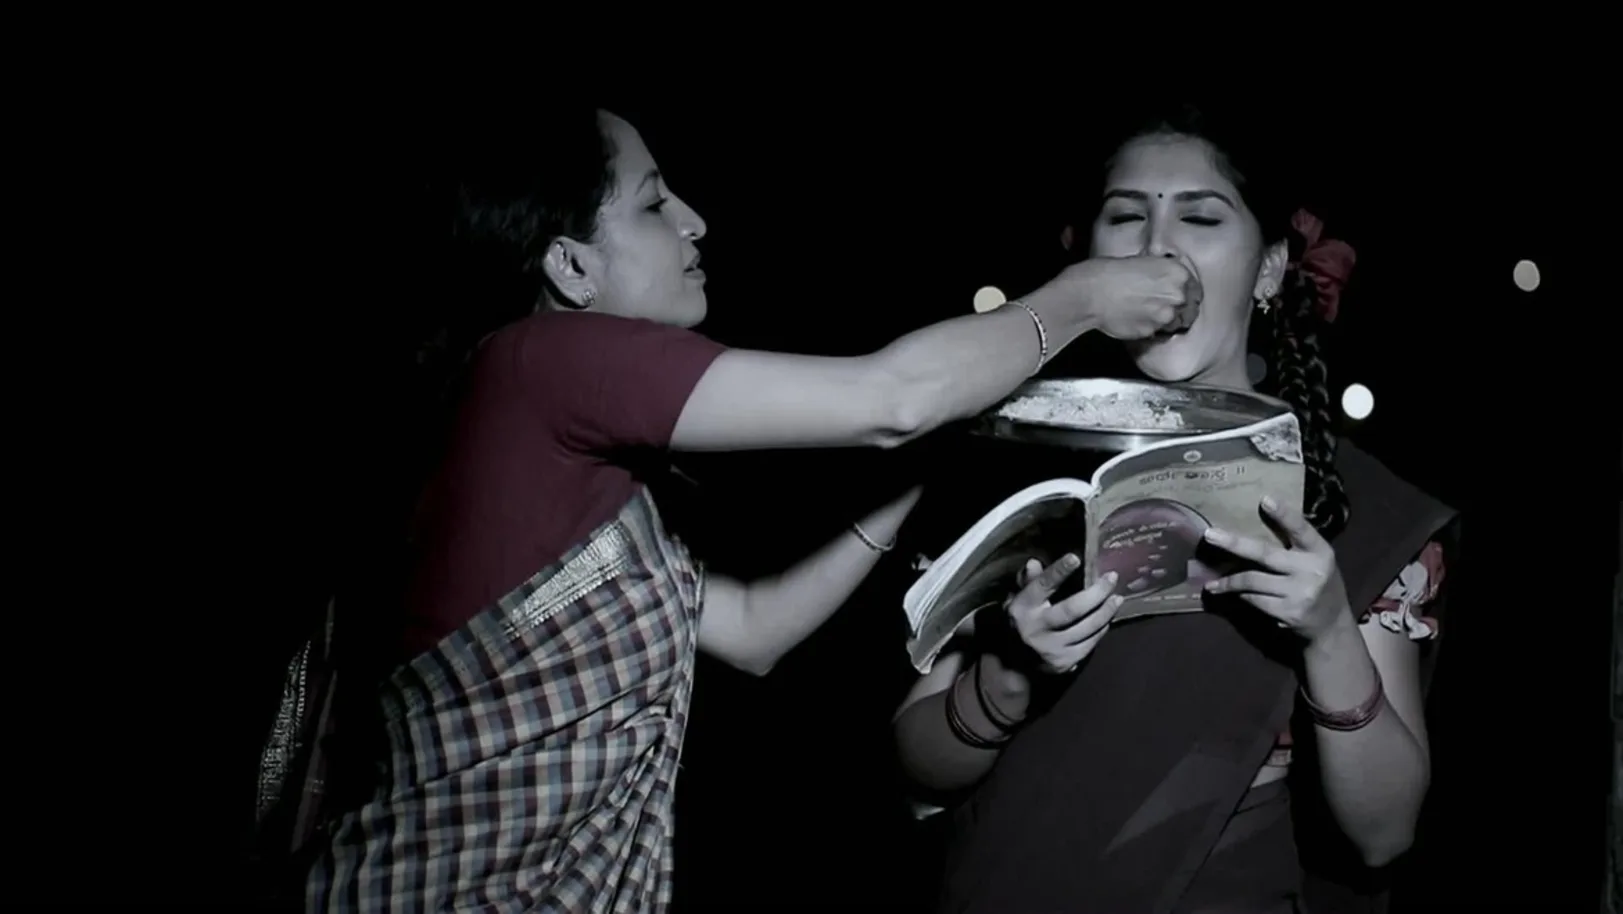 Kamali's mother feeds her daughter Kamali - Kamali 